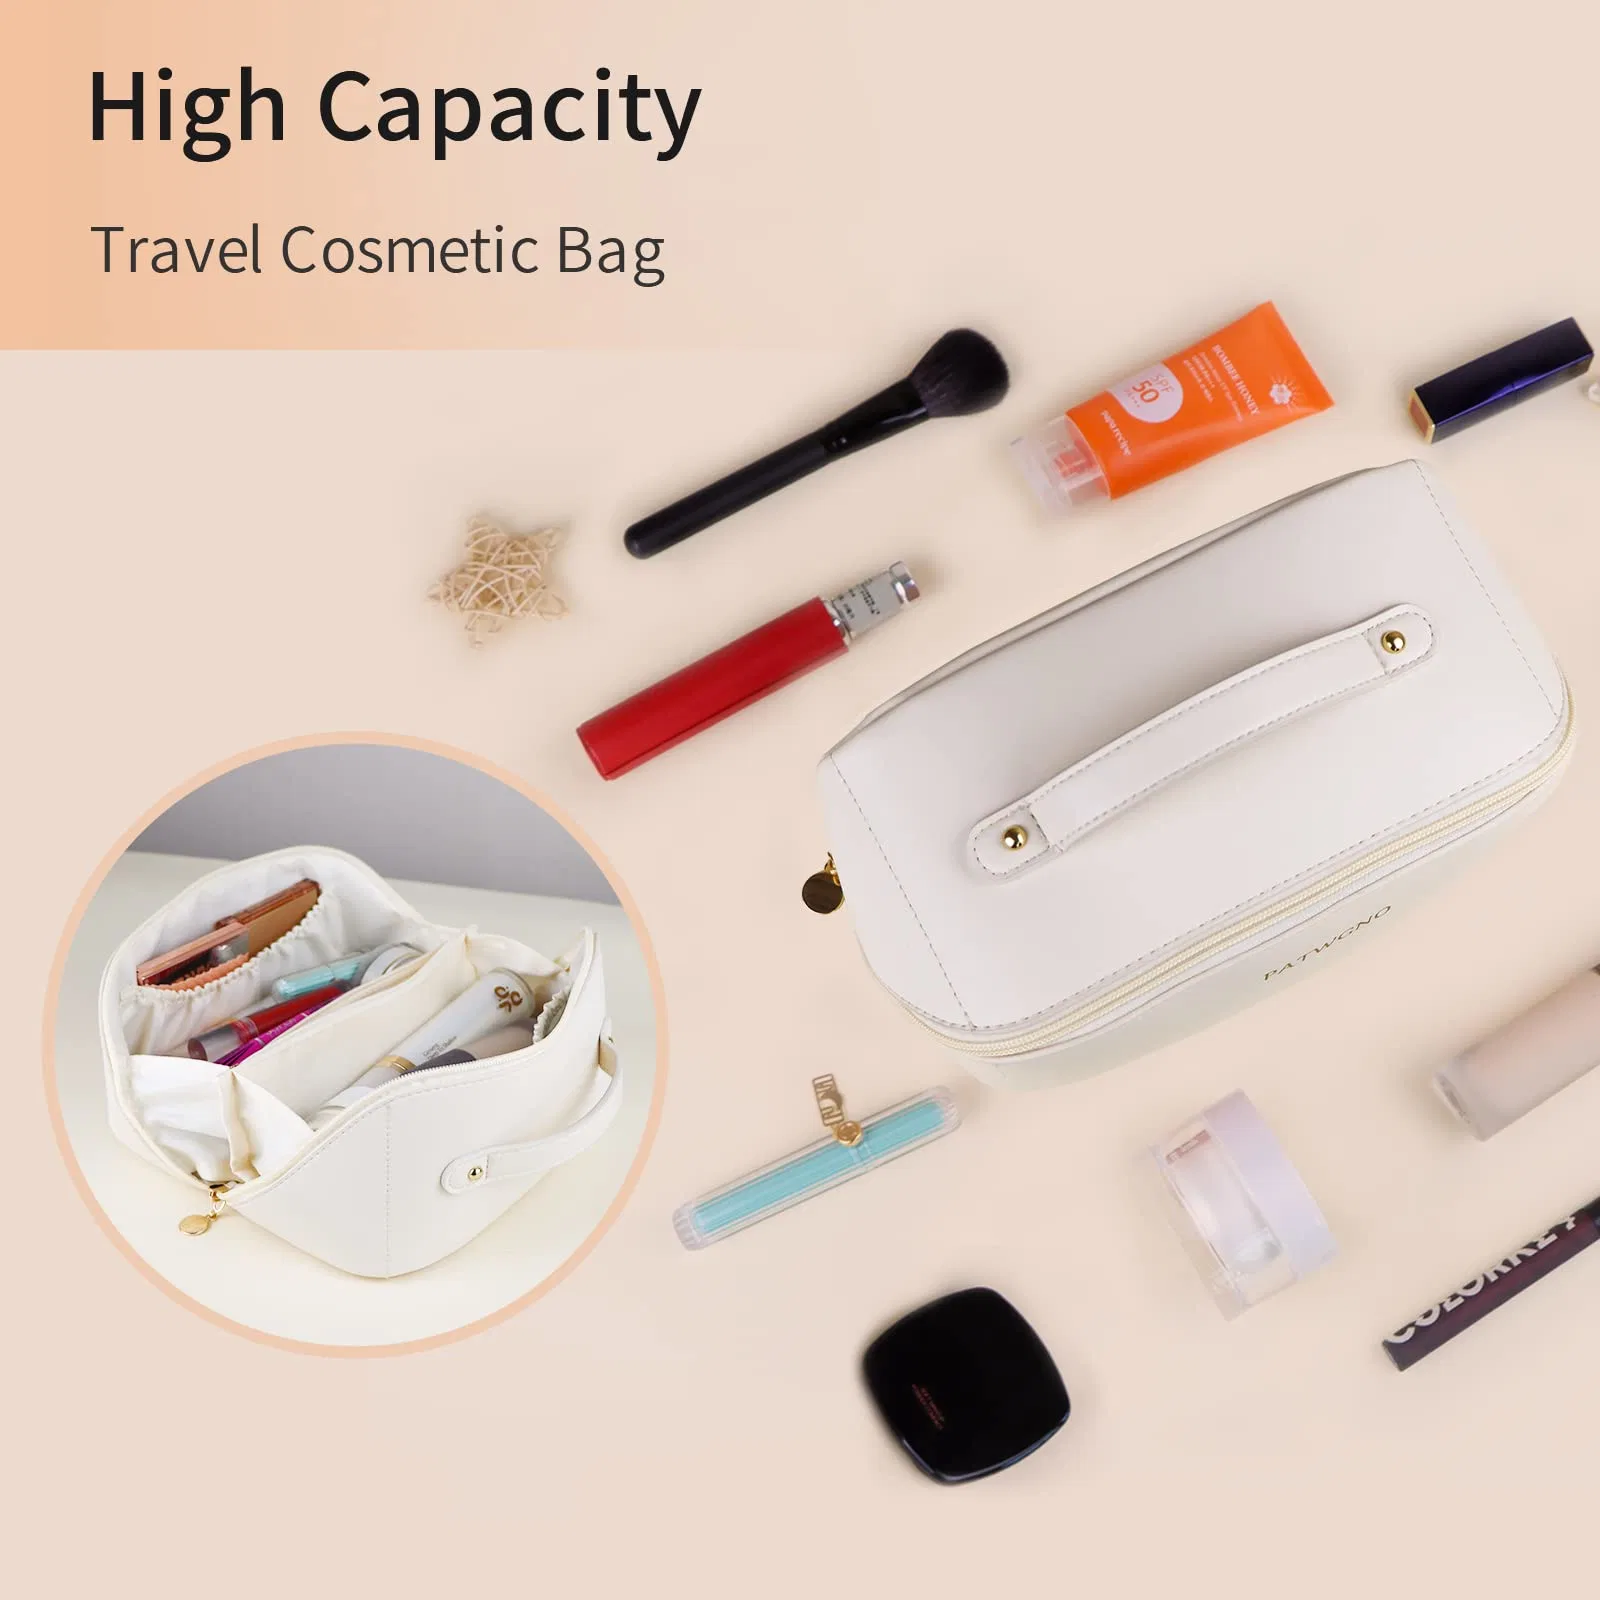 Große Kapazität Reise Kosmetiktasche, Portable Make-up-Tasche öffnet flach für wasserdichte PU-Leder Multifunktions-Aufbewahrung Make-up-Tasche für Frau